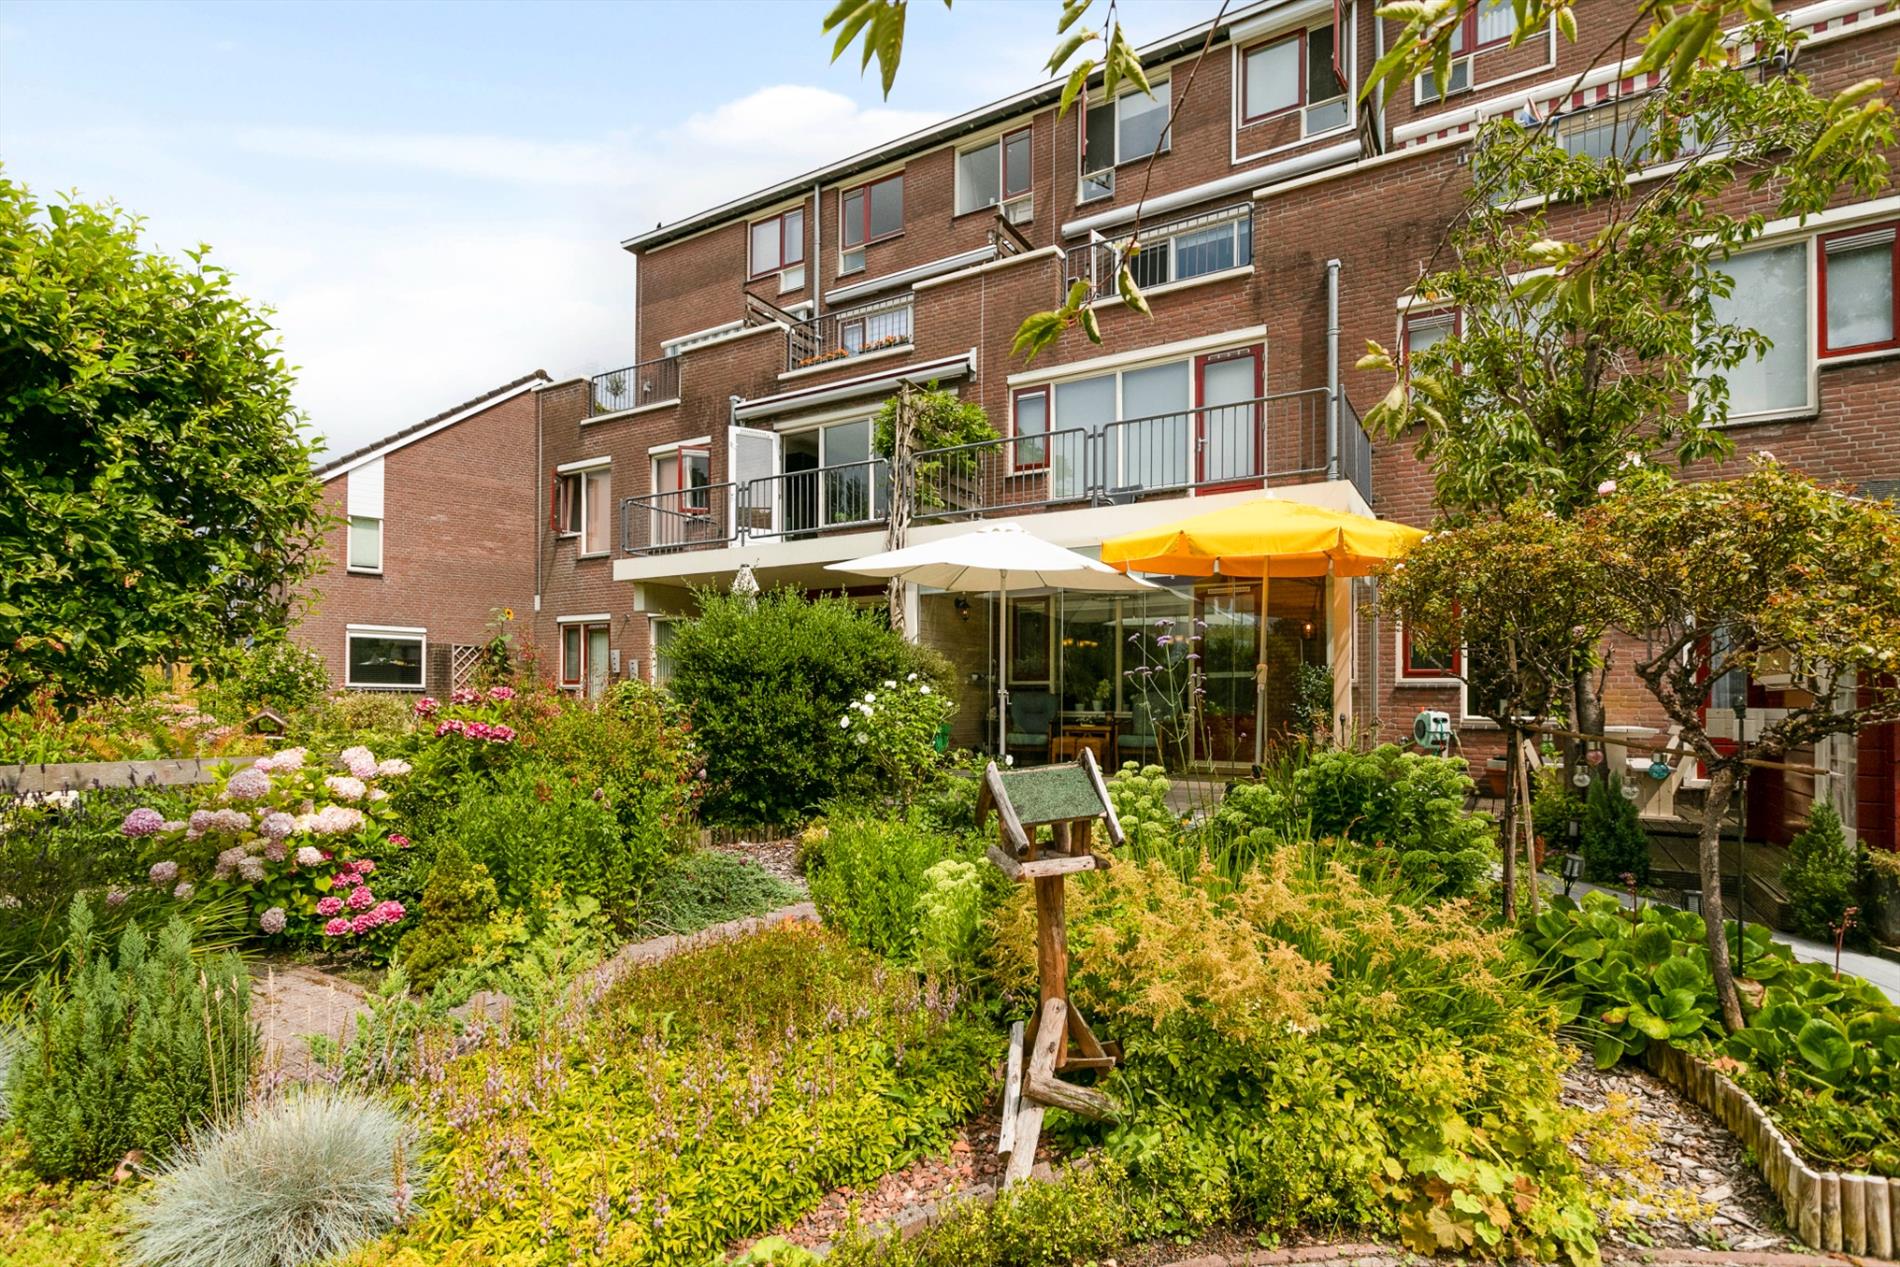 Benedenwoning verkocht | onder voorbehoud in Dordrecht